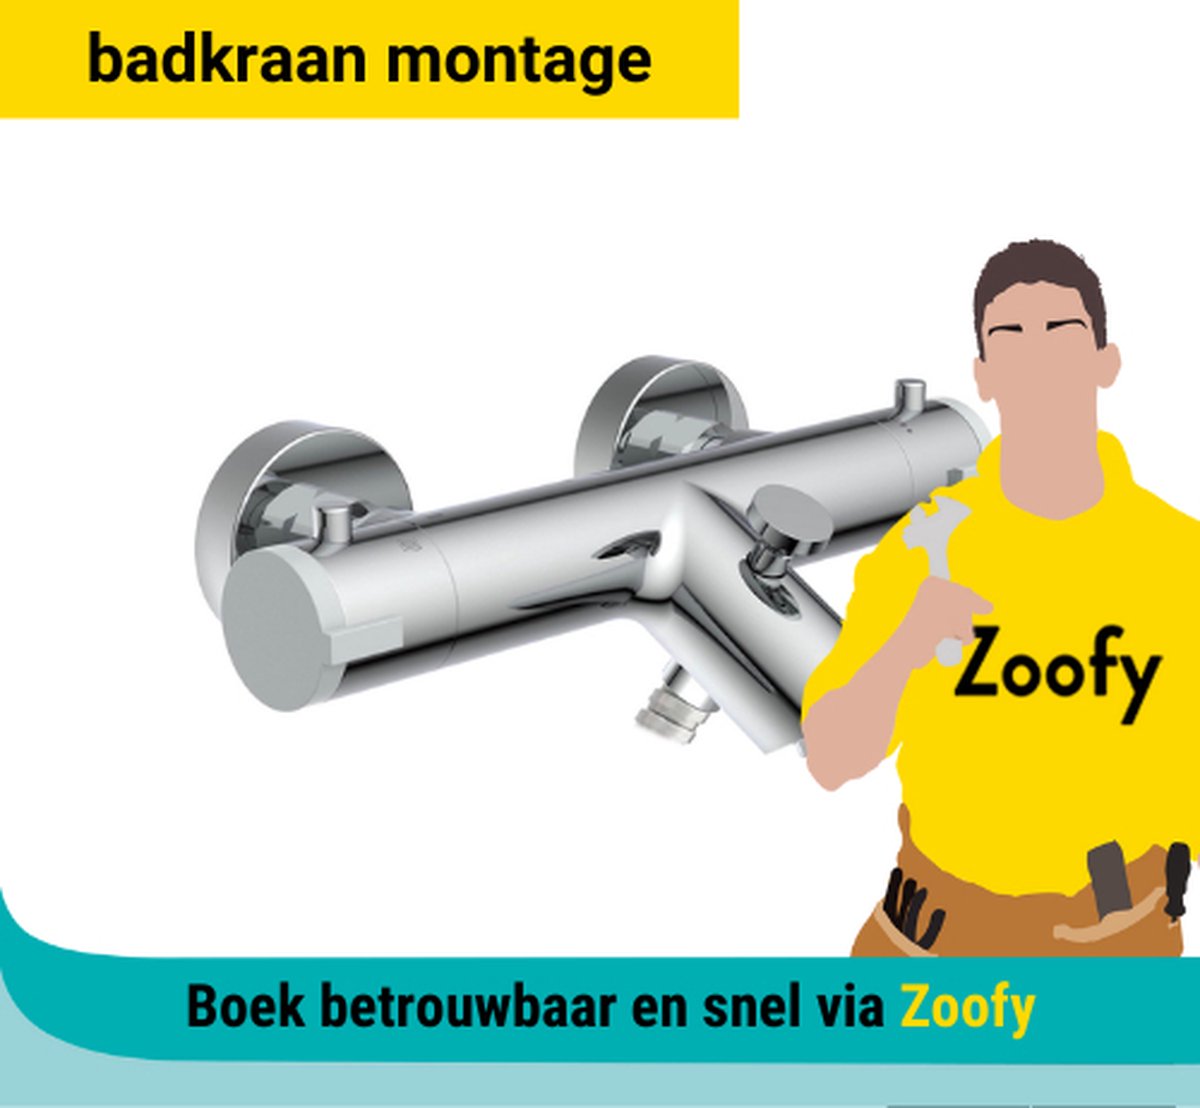 Installatie badkraan - Door Zoofy in samenwerking met bol.com - Installatie-afspraak gepland binnen 1 werkdag